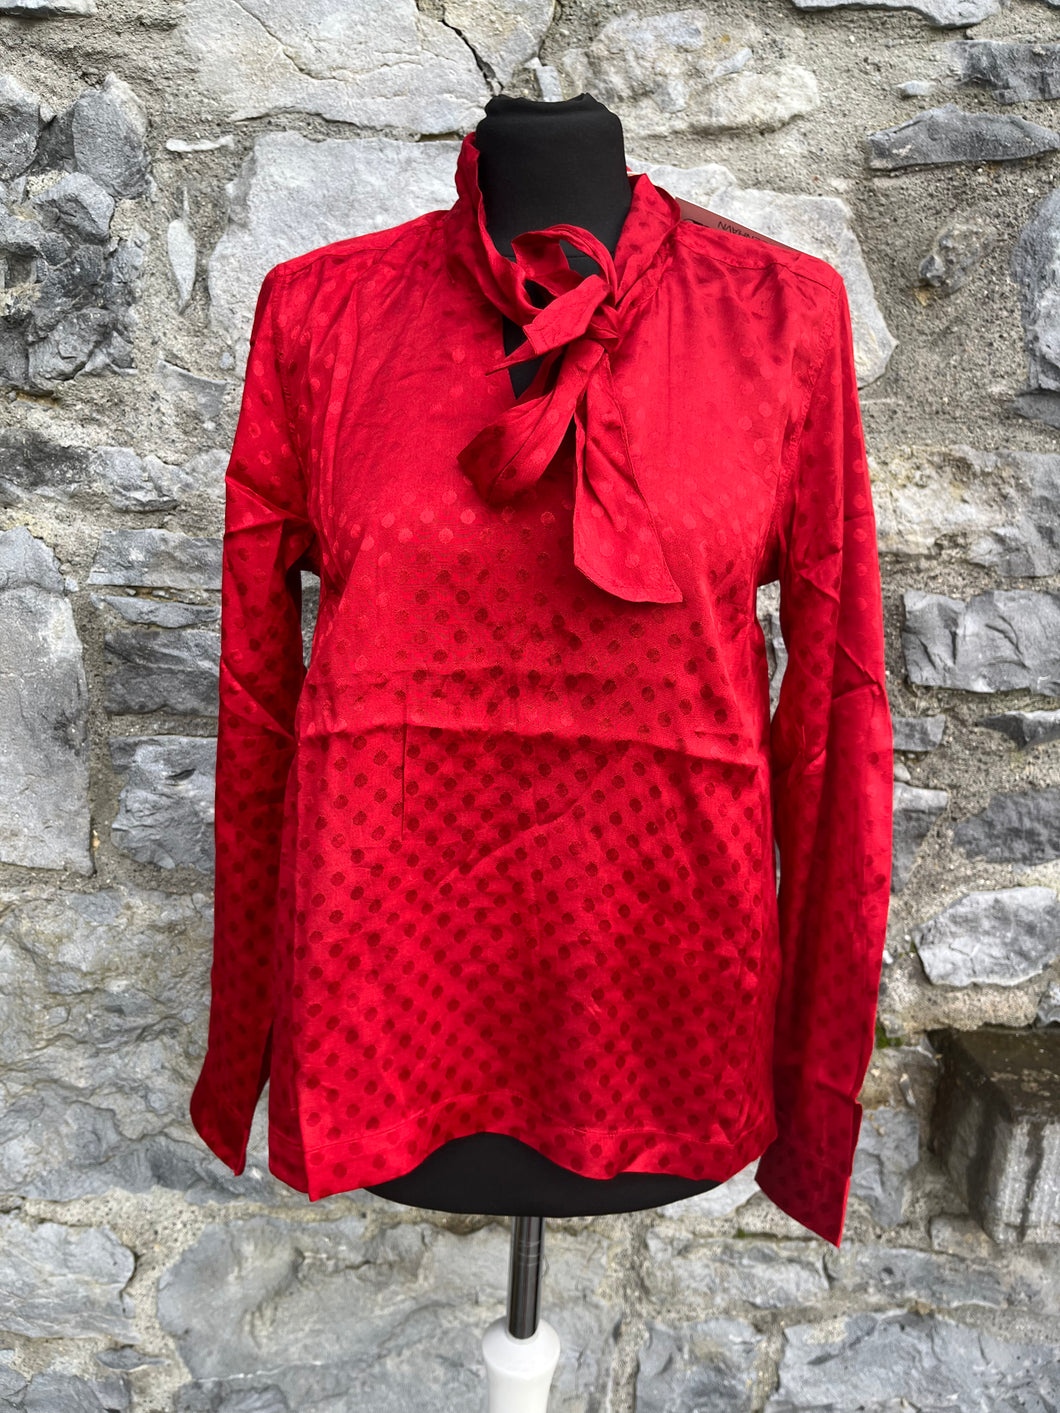 Red spotty blouse uk 6-8